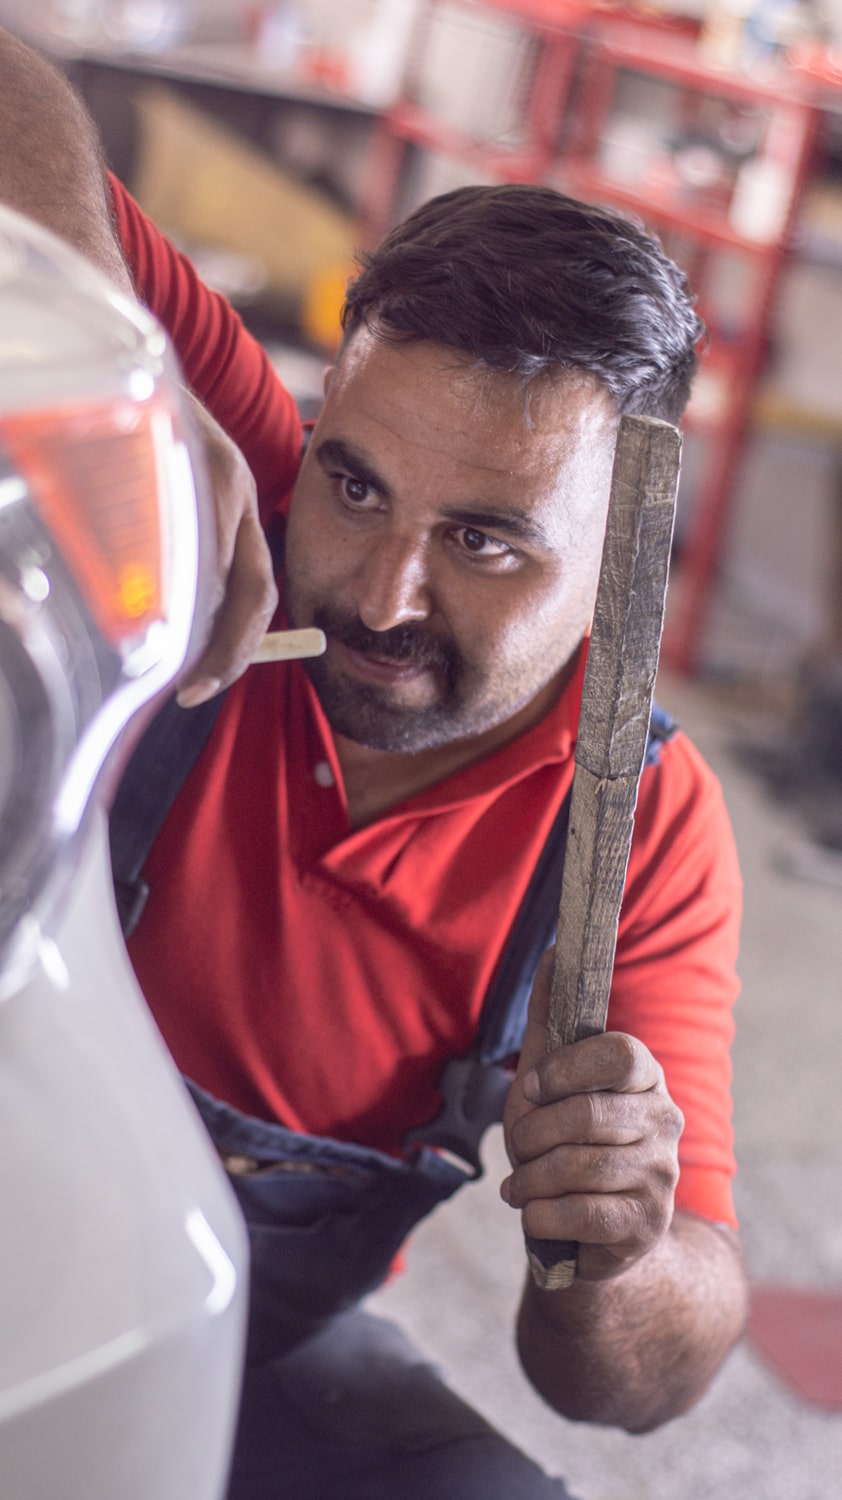 مکانیک با تجربه تعمیرگاه خودروهای لوکس در تهران